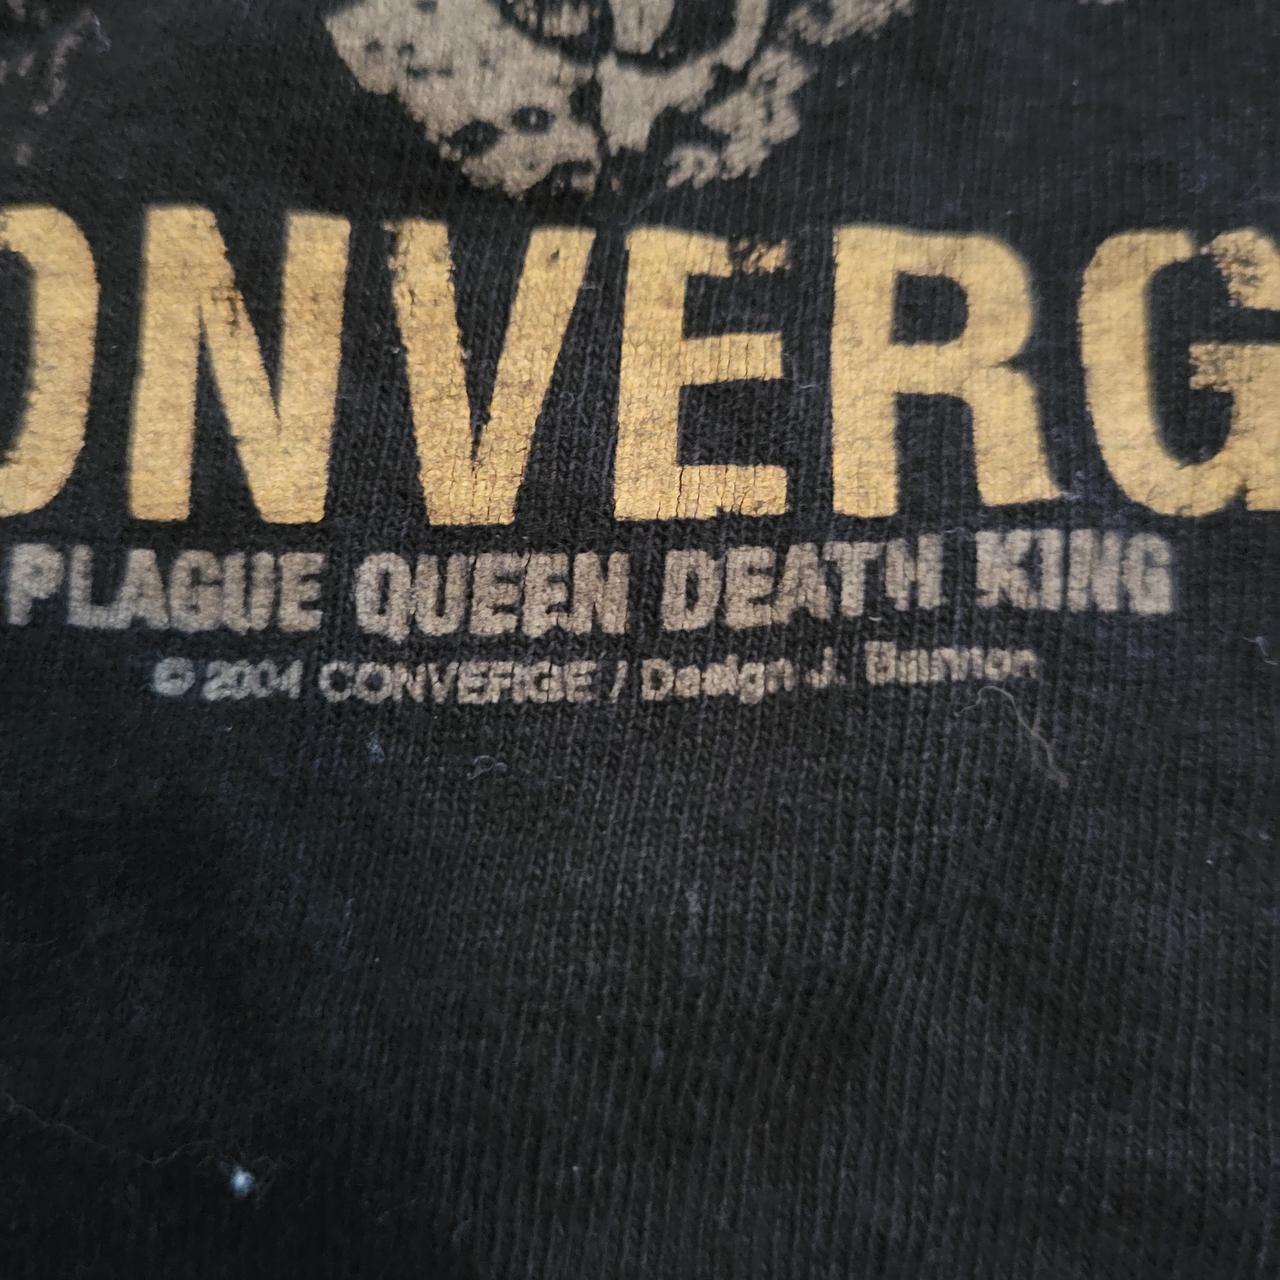 Product Image 3 - Converge 2004 MEDIUM plague queen